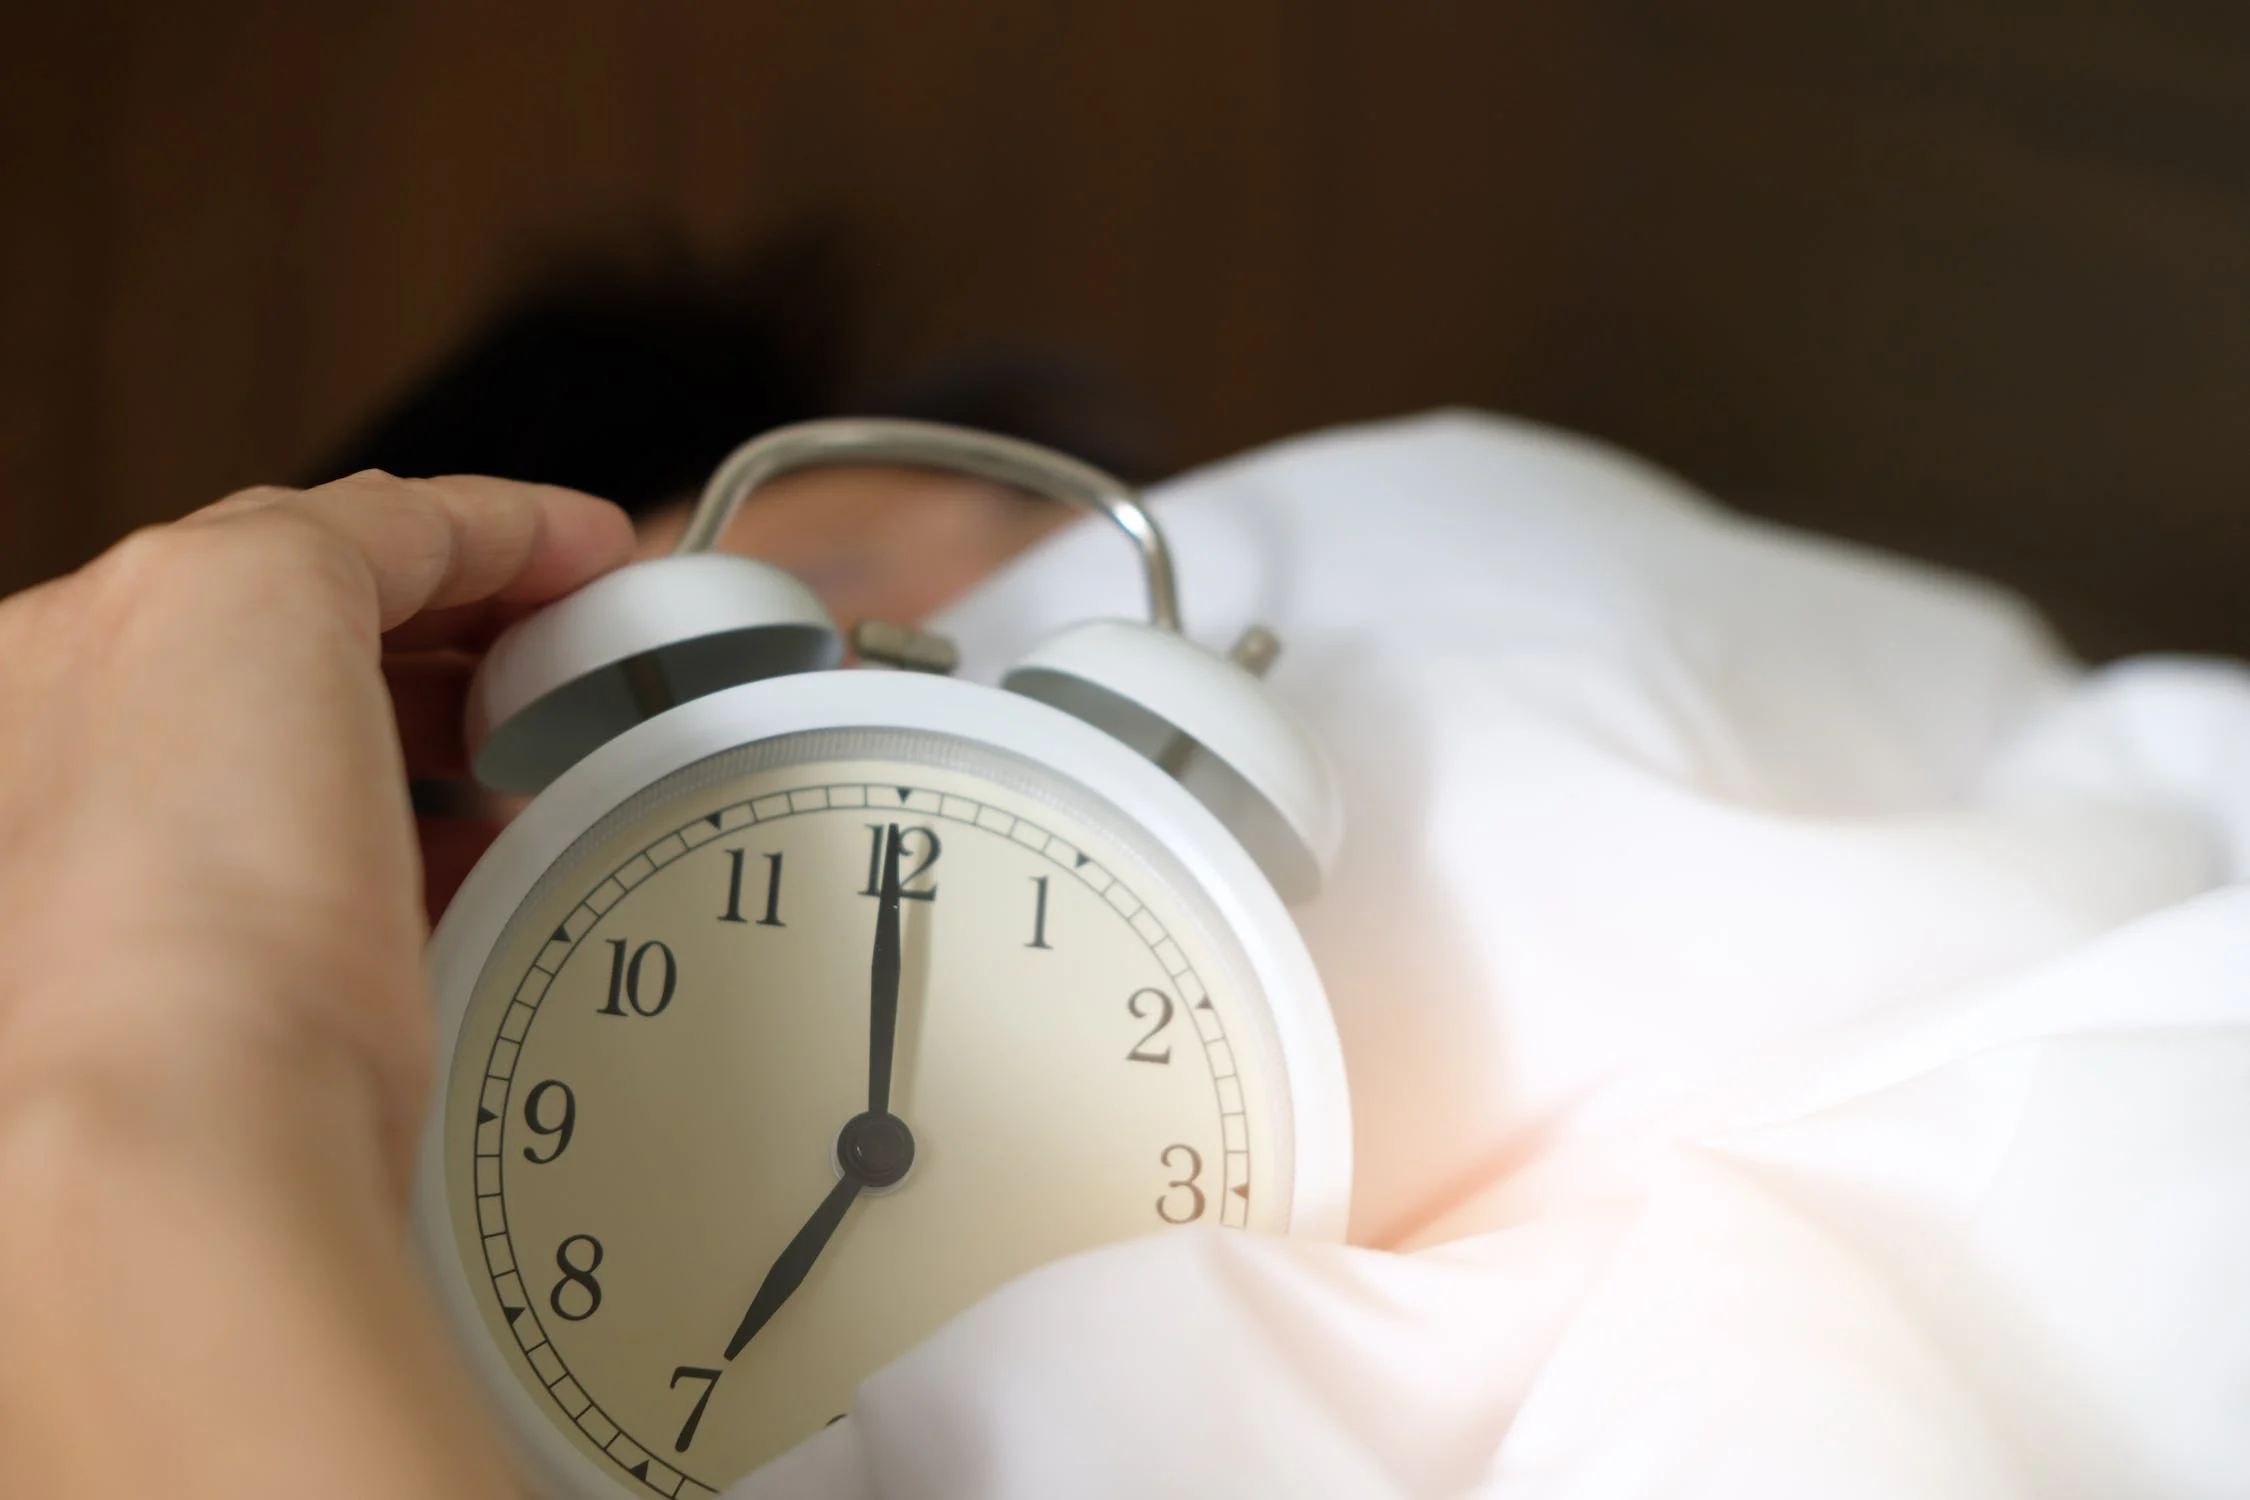 침대에서 어떤 사람이 자명종 시계를 끈채 다시 늦잠을 자고 있는 모습.